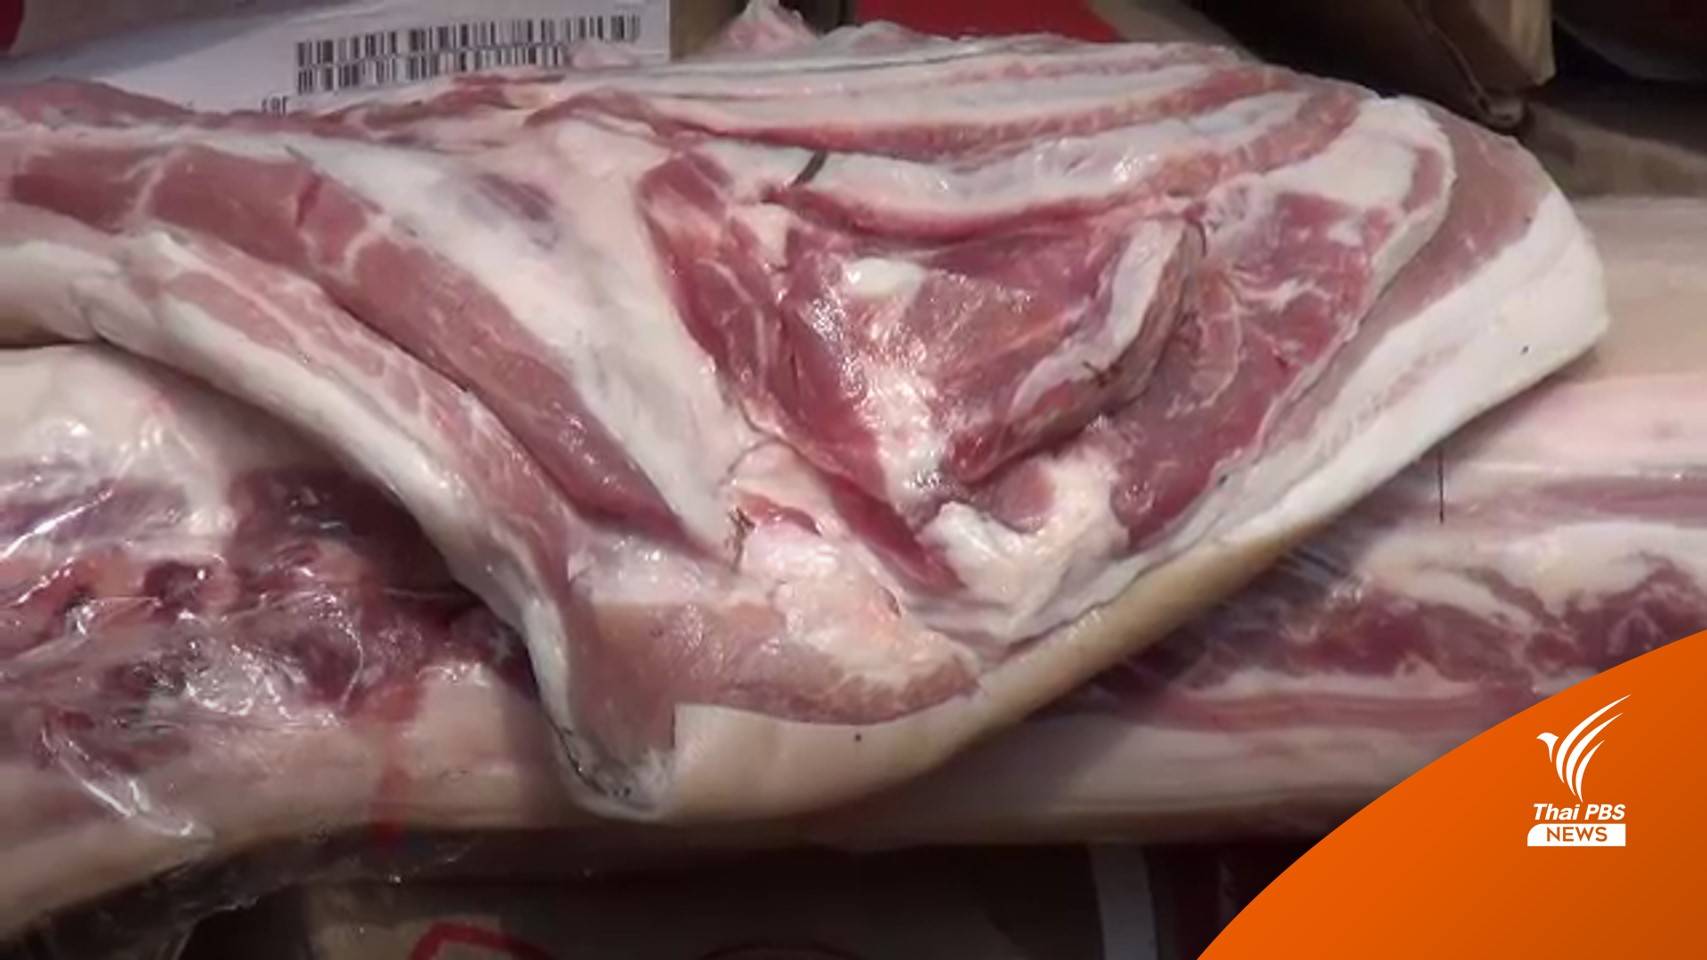 ข่าวดี! หลังตรุษจีน "เนื้อหมู" ลดราคาลงเฉลี่ย 170-200 บาท